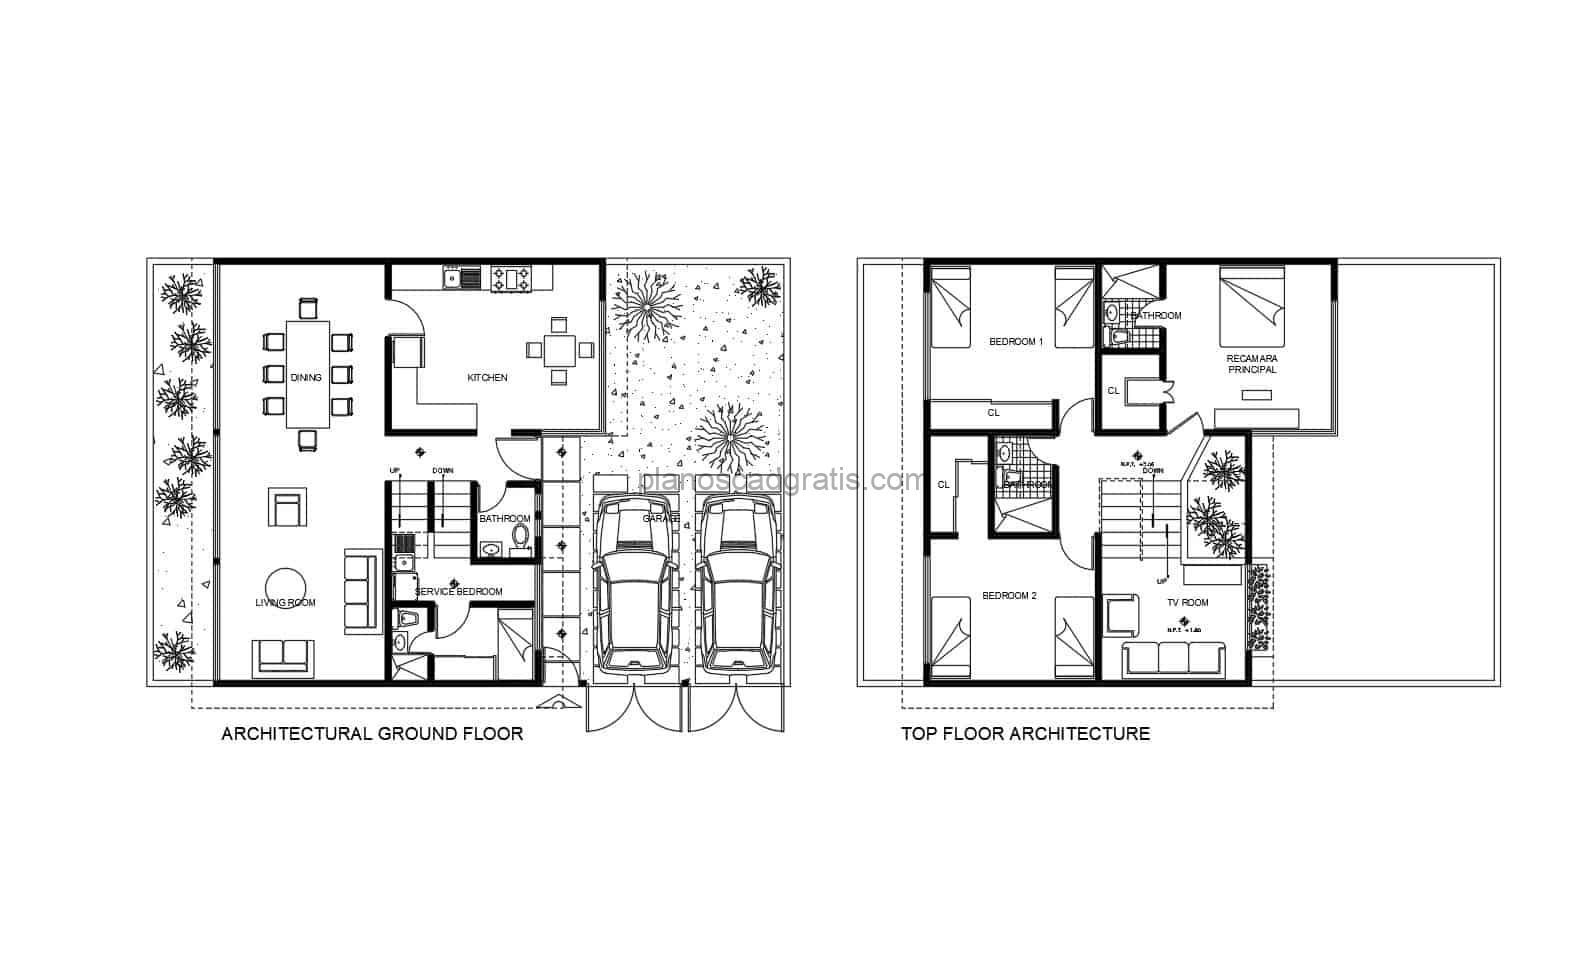 Planos con dimensiones y bloques de autocad de residencia de dos niveles con tres habitaciones en el segundo nivel, y habitacion de servicio en primer nivel, planos para descarga gratis en formato dwg de autocad